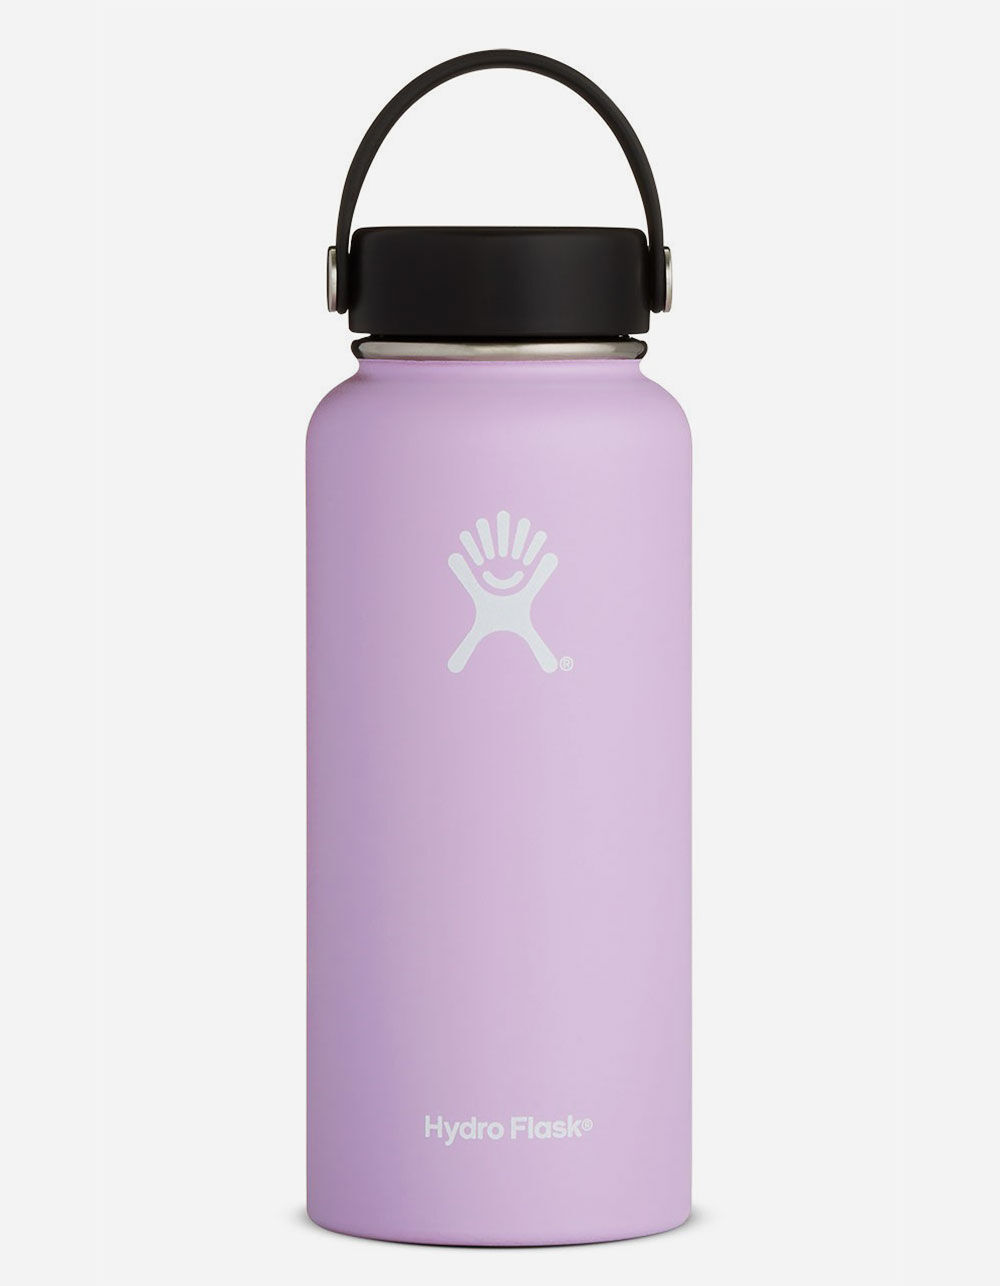 the purple hydro flask bottle｜TikTok Search